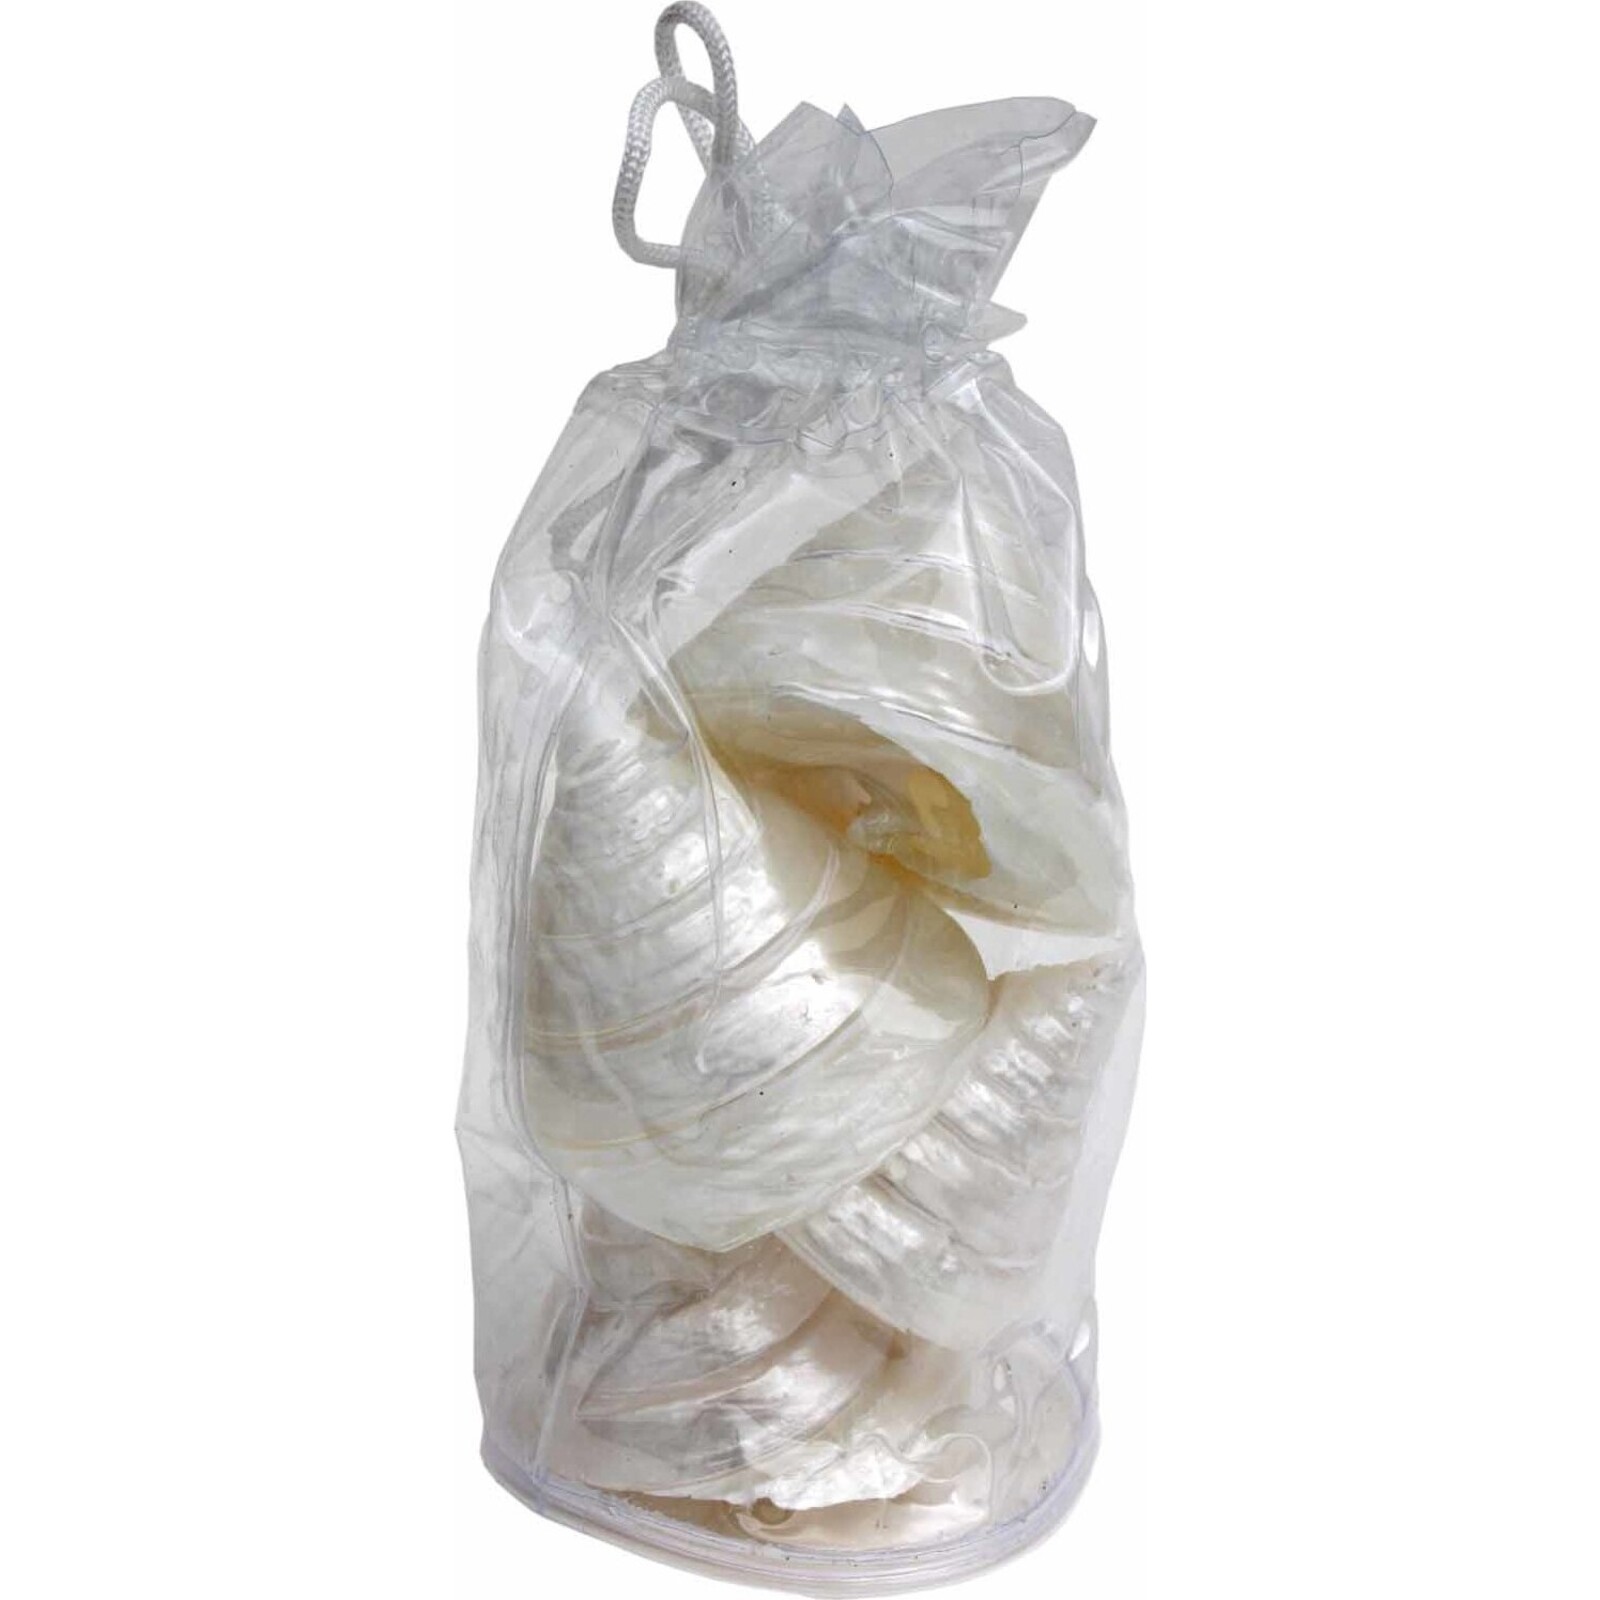 Shell Bag - Polished Trochus